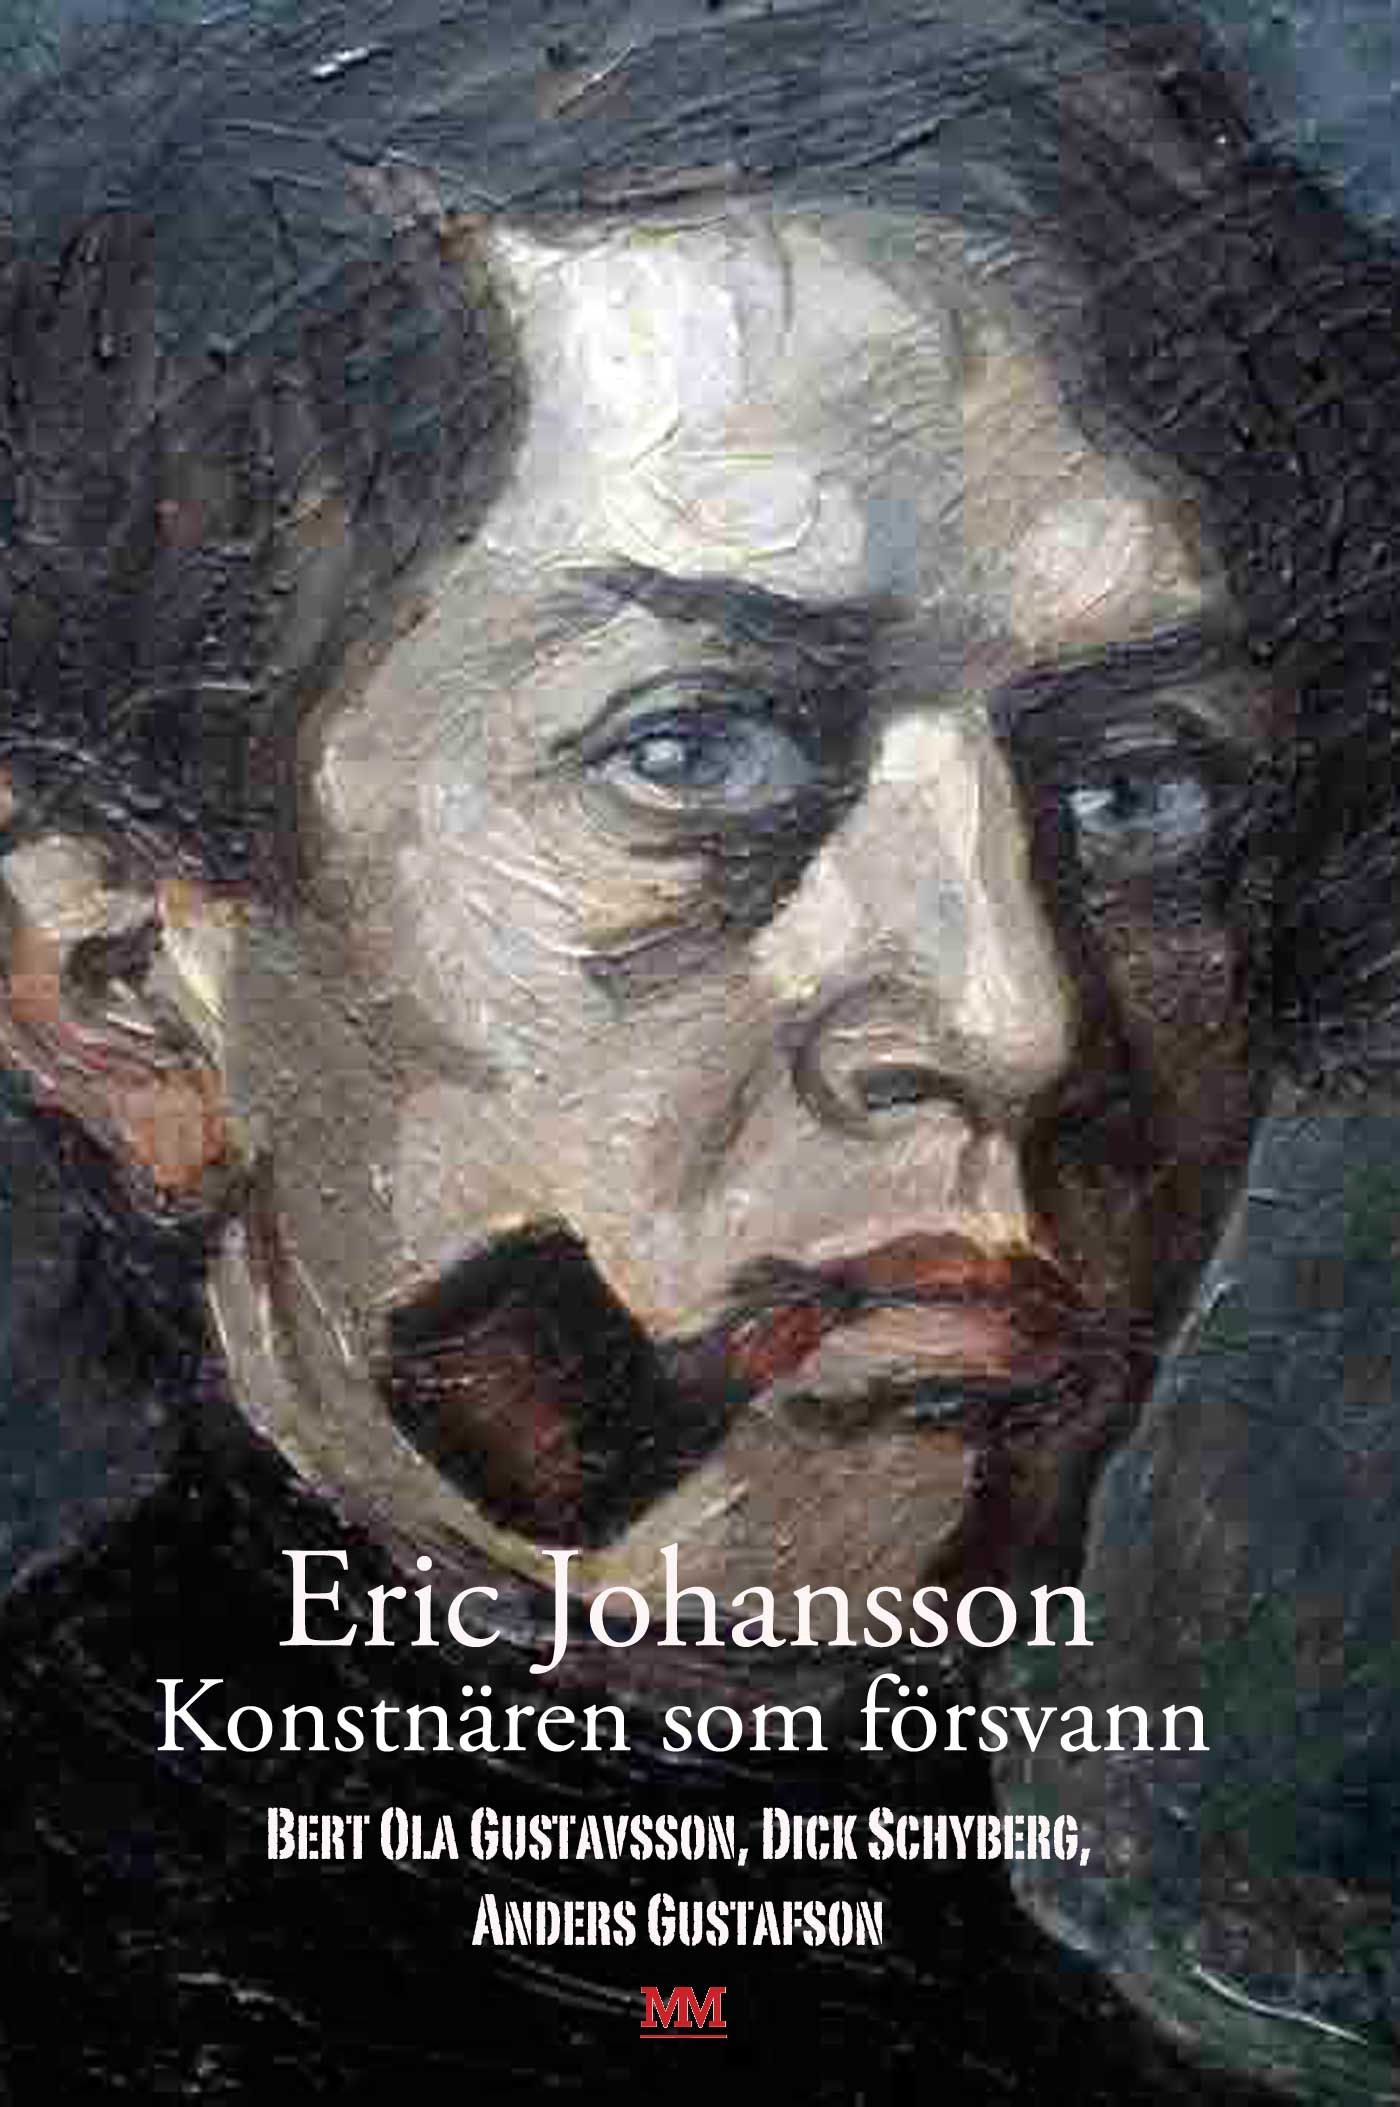 Eric Johansson - konstnären som försvann, eBook by Anders Gustafson, Bert Ola Gustavsson, Dick Schyberg